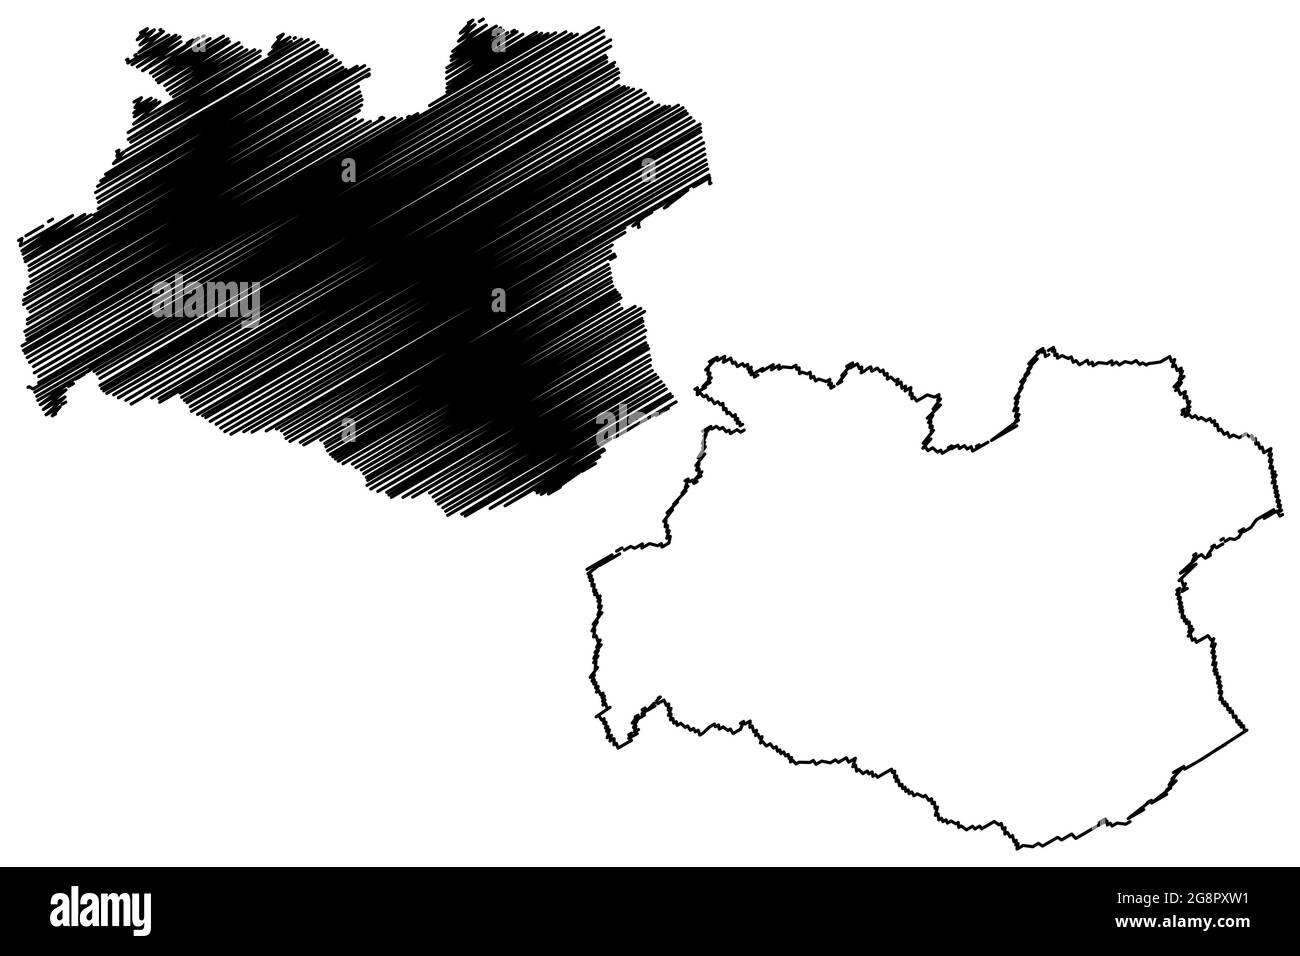 Landkreis Soest (Bundesrepublik Deutschland, Land Nordrhein-Westfalen, NRW, Region Arnsberg) Kartenvektordarstellung, Scribble-Skizze Soest-Karte Stock Vektor